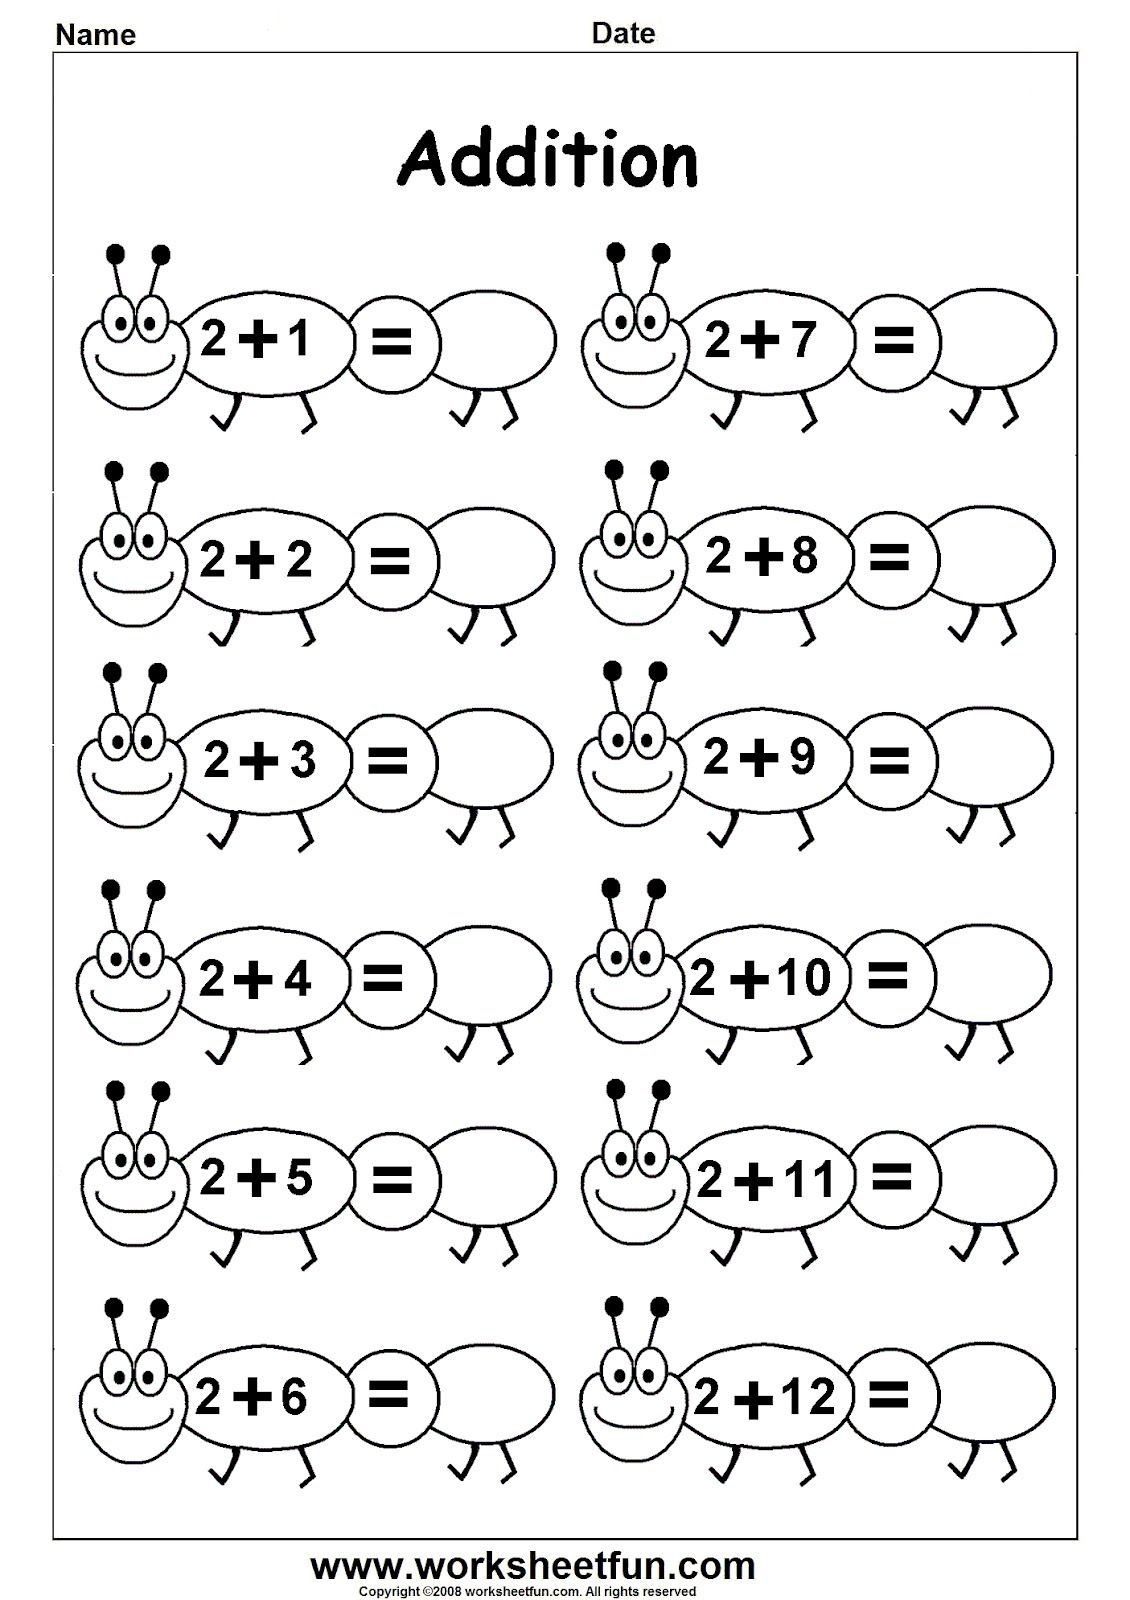 Worksheetfun - Free Printable Worksheets | Teaching - Mathematics - Free Printable Sheets For Kindergarten